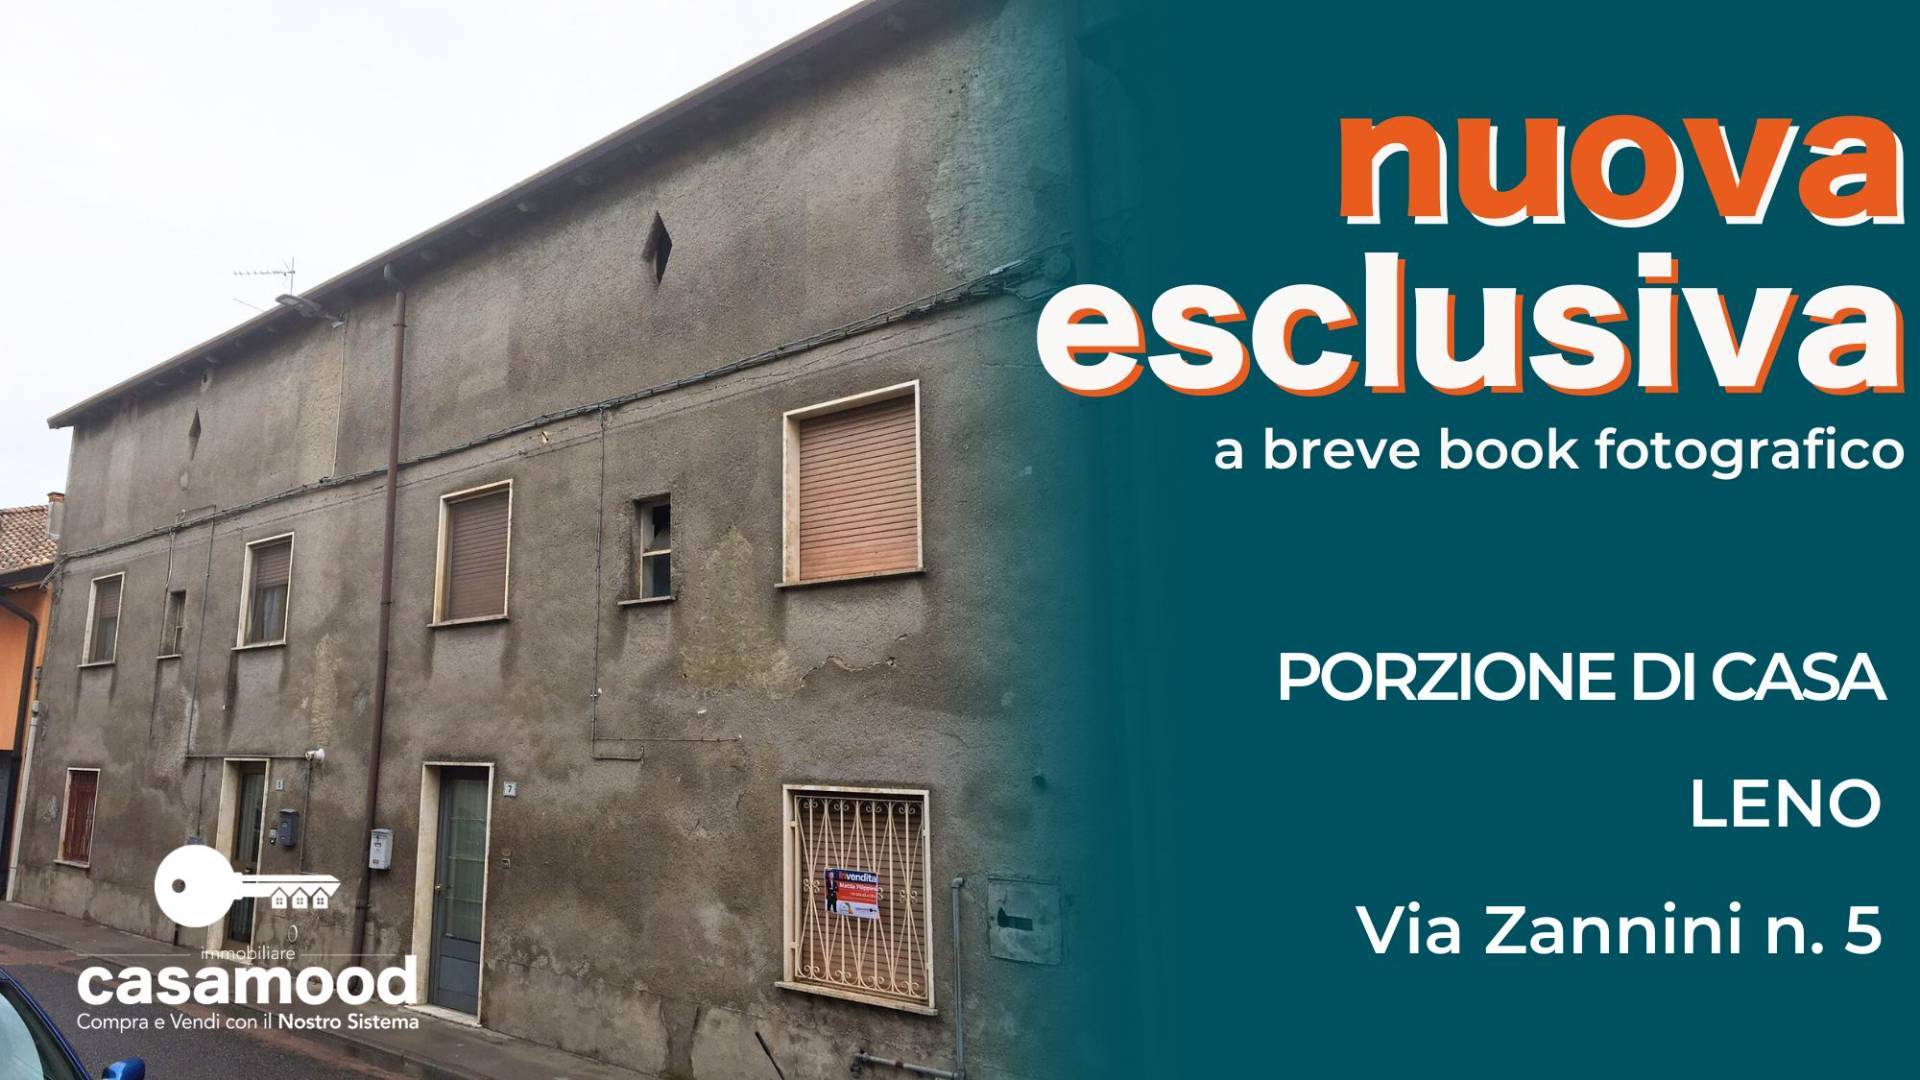 Rustico / Casale in vendita a Leno, 7 locali, prezzo € 125.000 | PortaleAgenzieImmobiliari.it